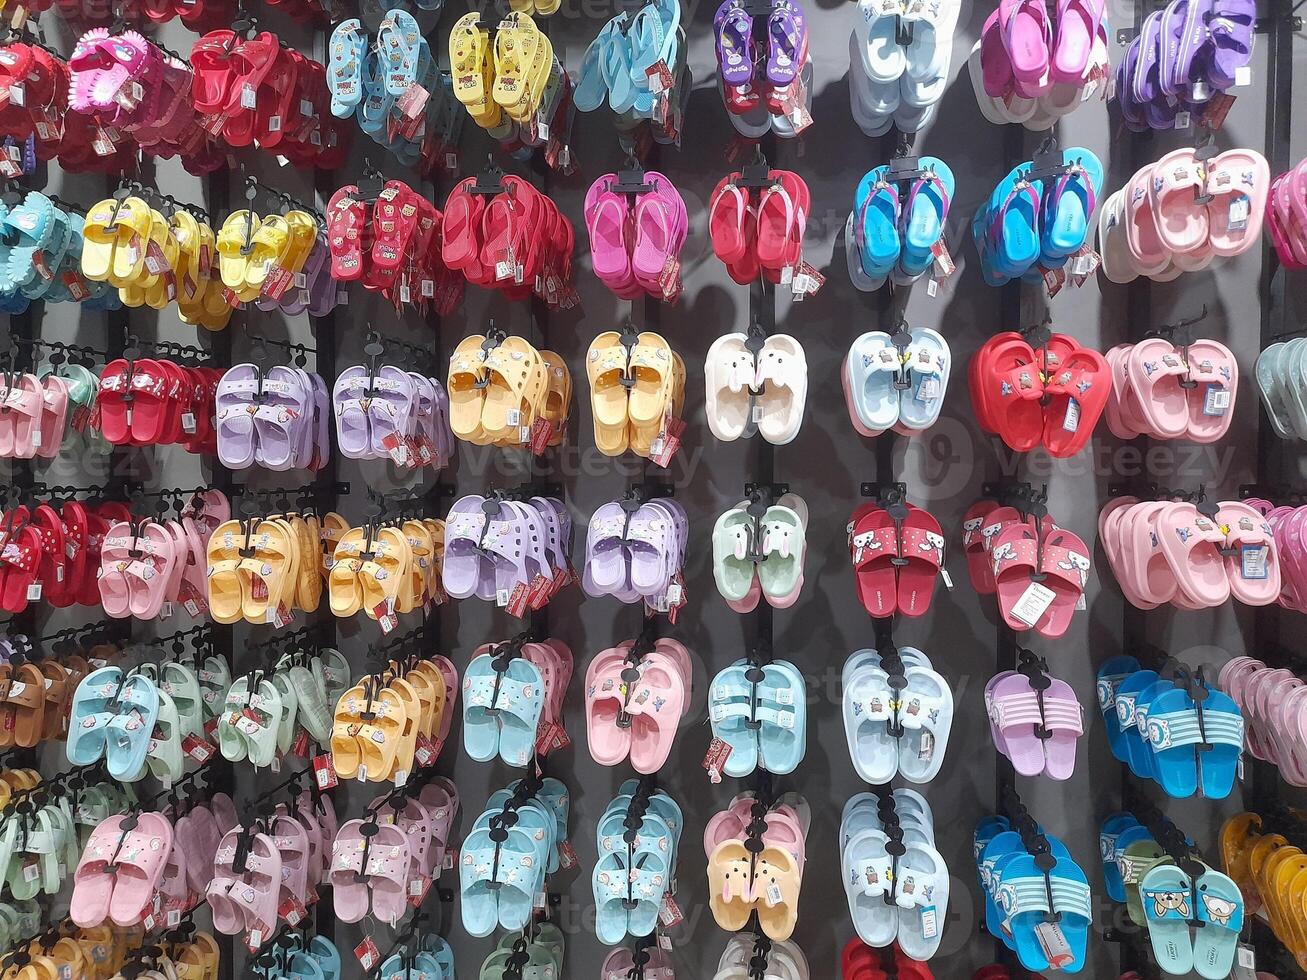 olika typer av skor och sandaler visas i en sko affär skyltfönster. foto